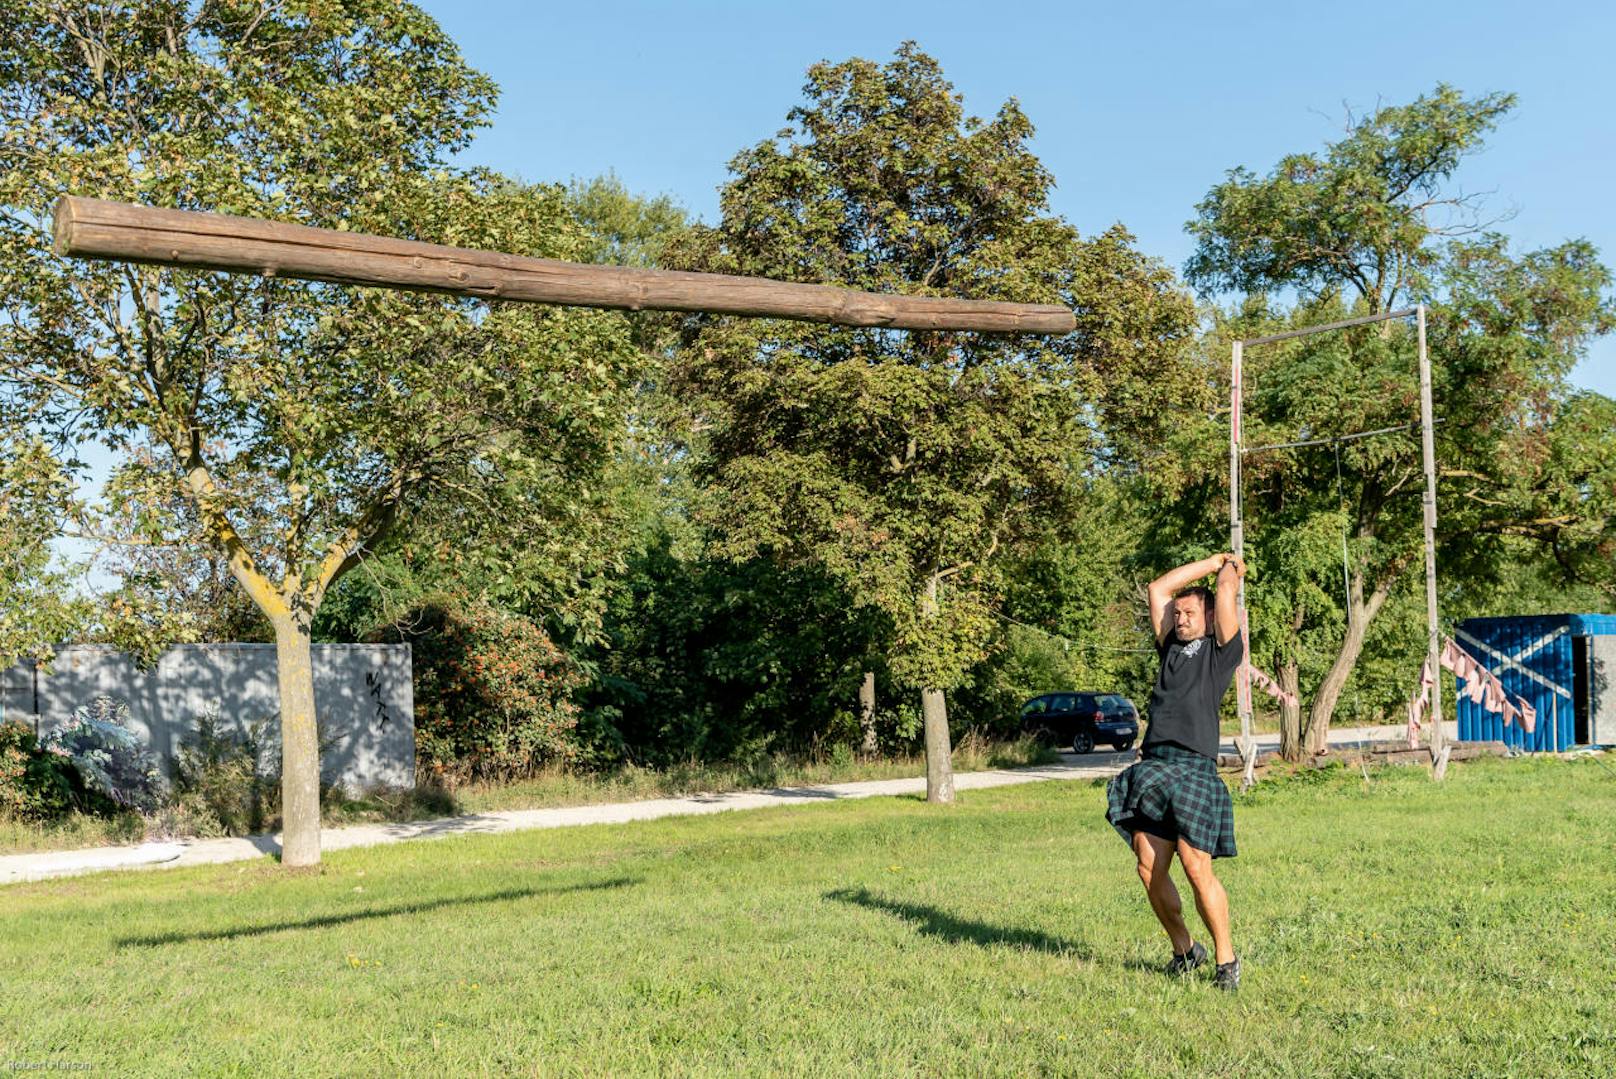 Die Königsdisziplin ist aber das Baumstammwerfen, das sogenannte "Caber tossing". Dabei müssen die Athleten einen rund fünf Meter langen Holzstamm durch die Luft wirbeln.